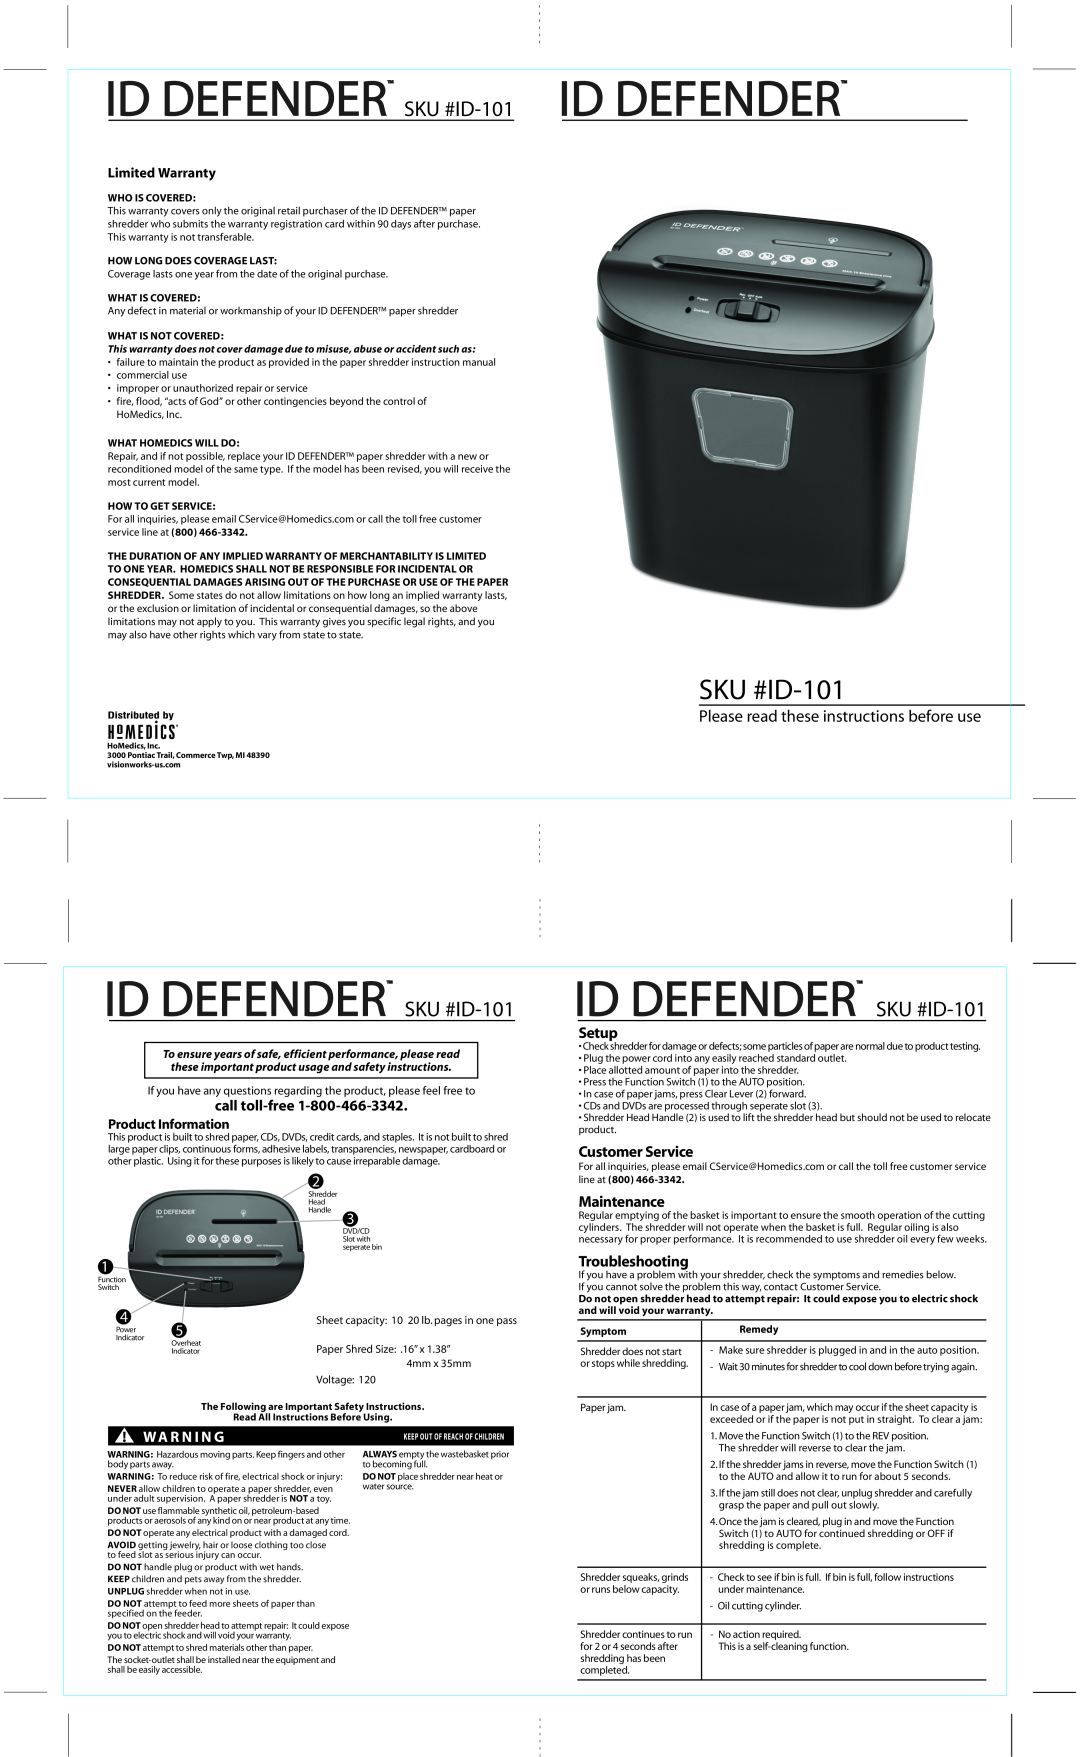 HoMedics warranty ID DEFENDER SKU #ID-101, Id Defender, SKU #ID-101 ID DEFENDER, call toll-free, Setup, Maintenance 